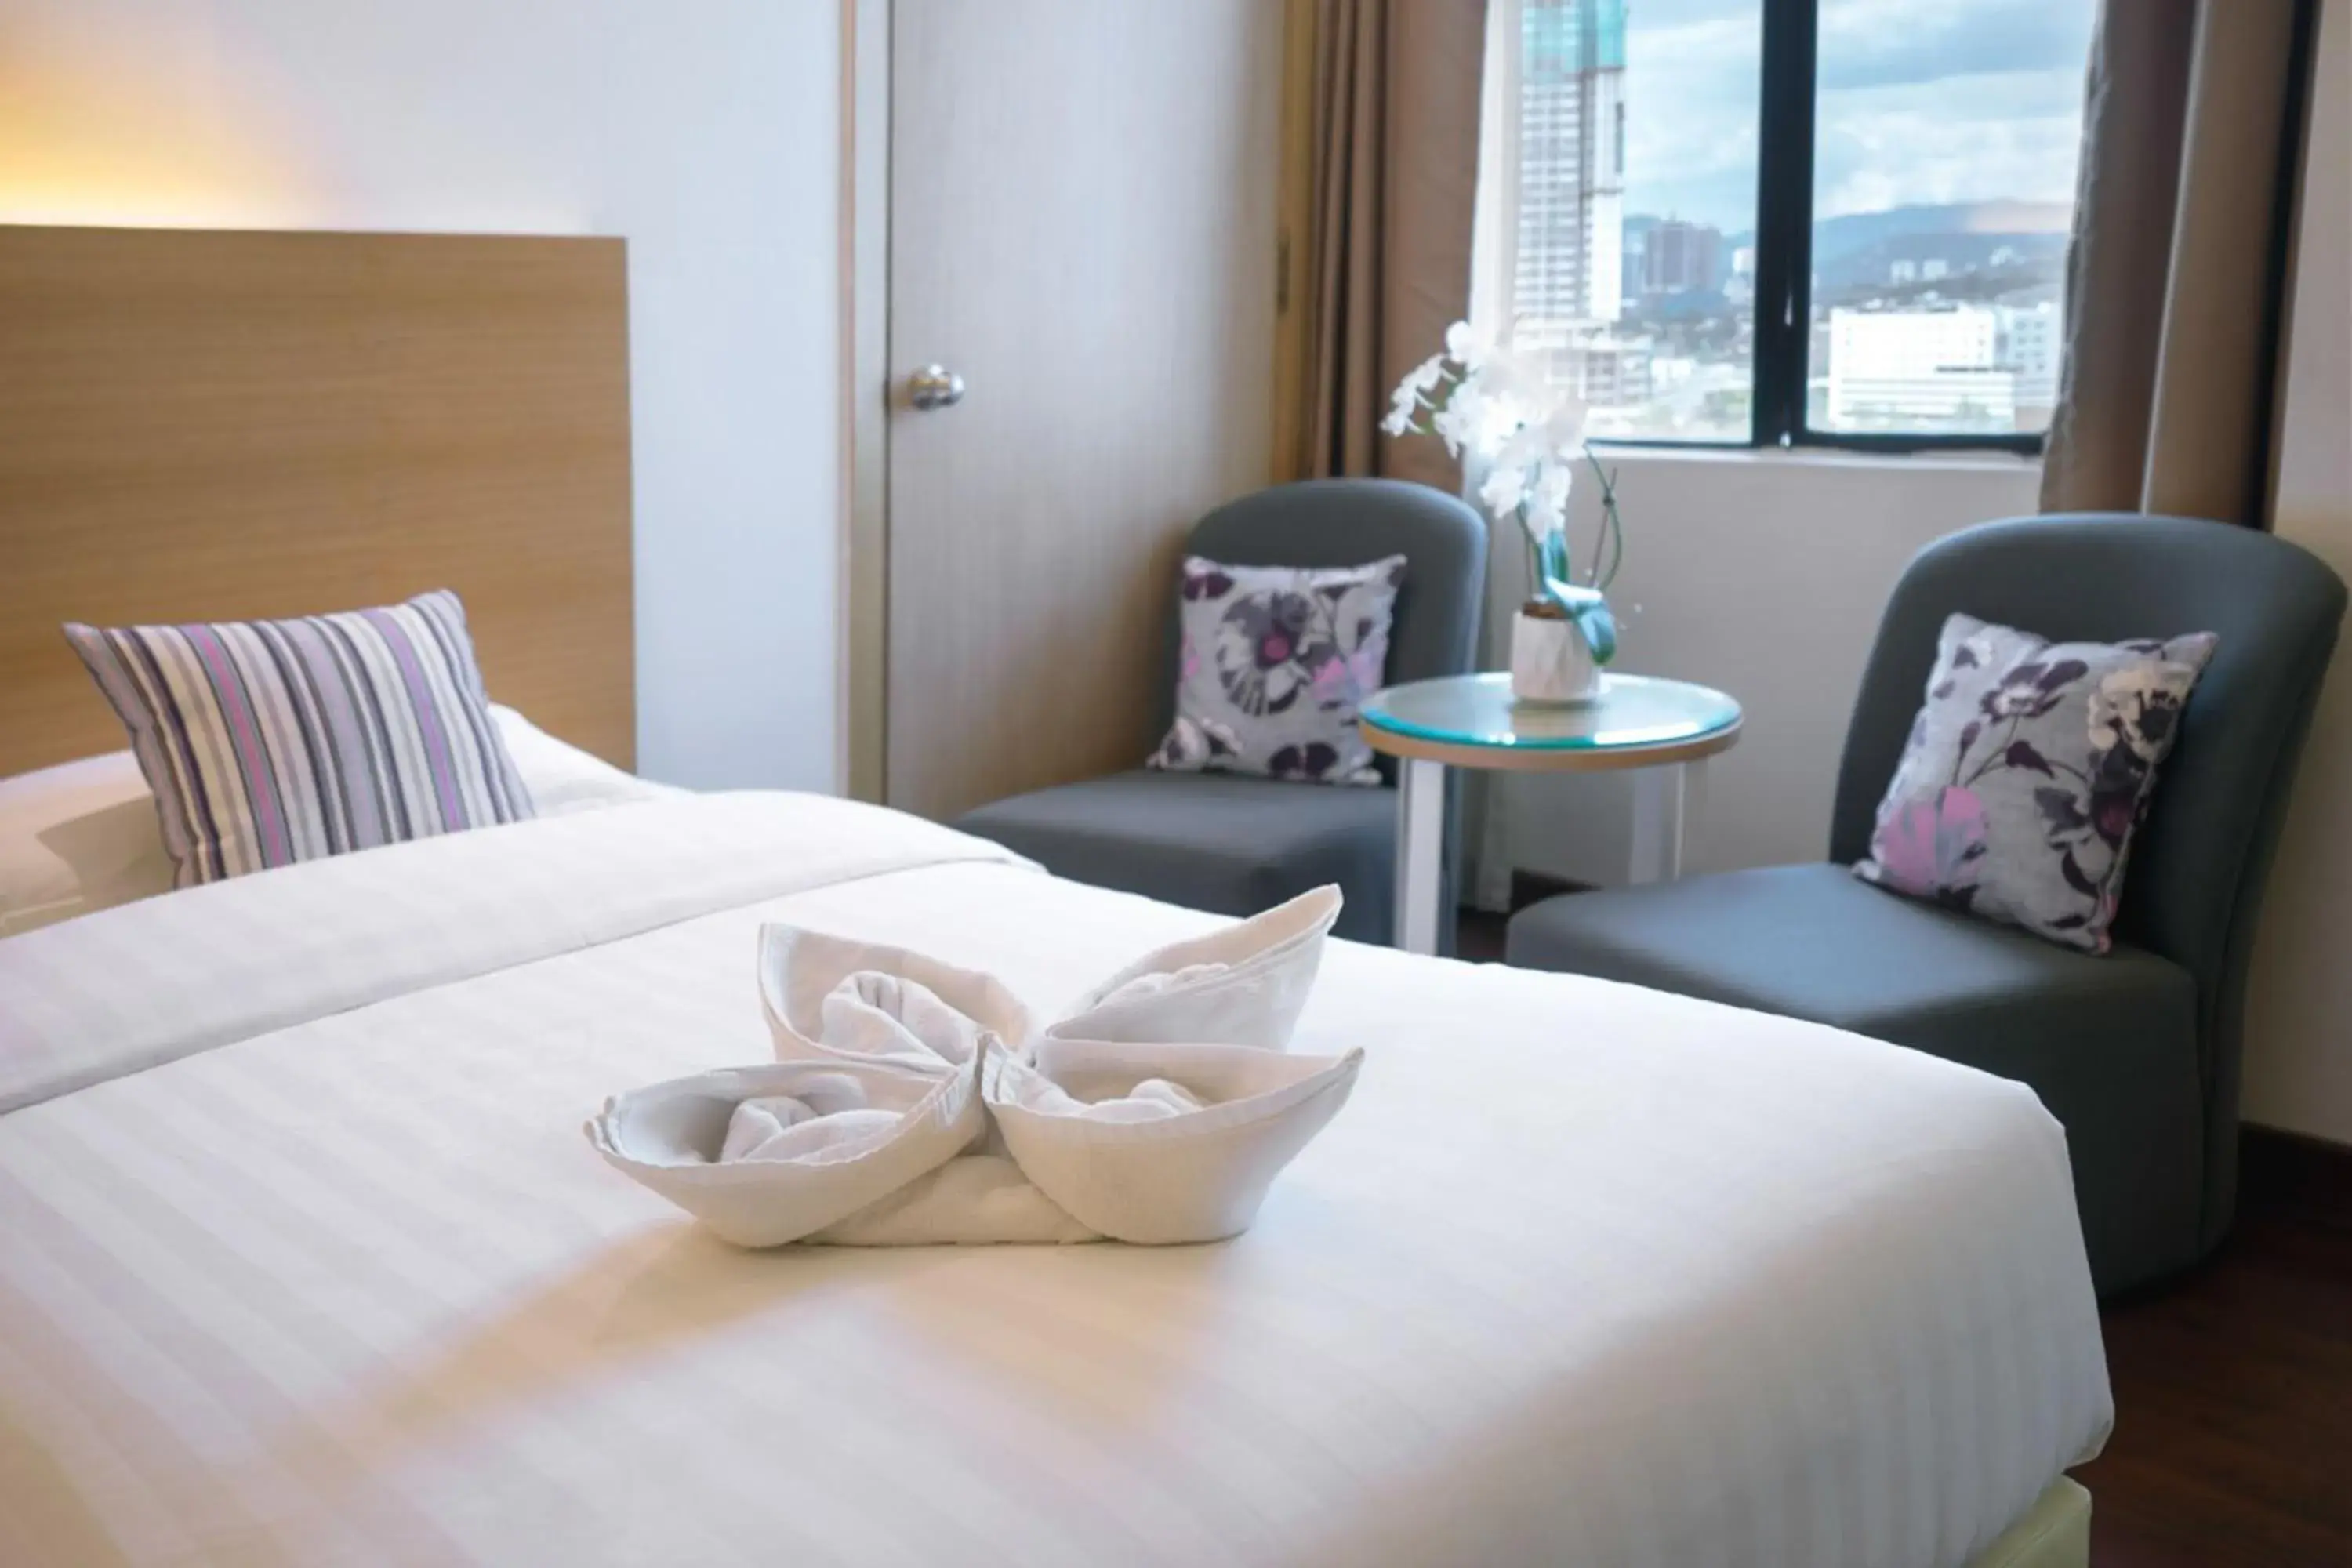 Bed in Crystal Crown Hotel Petaling Jaya